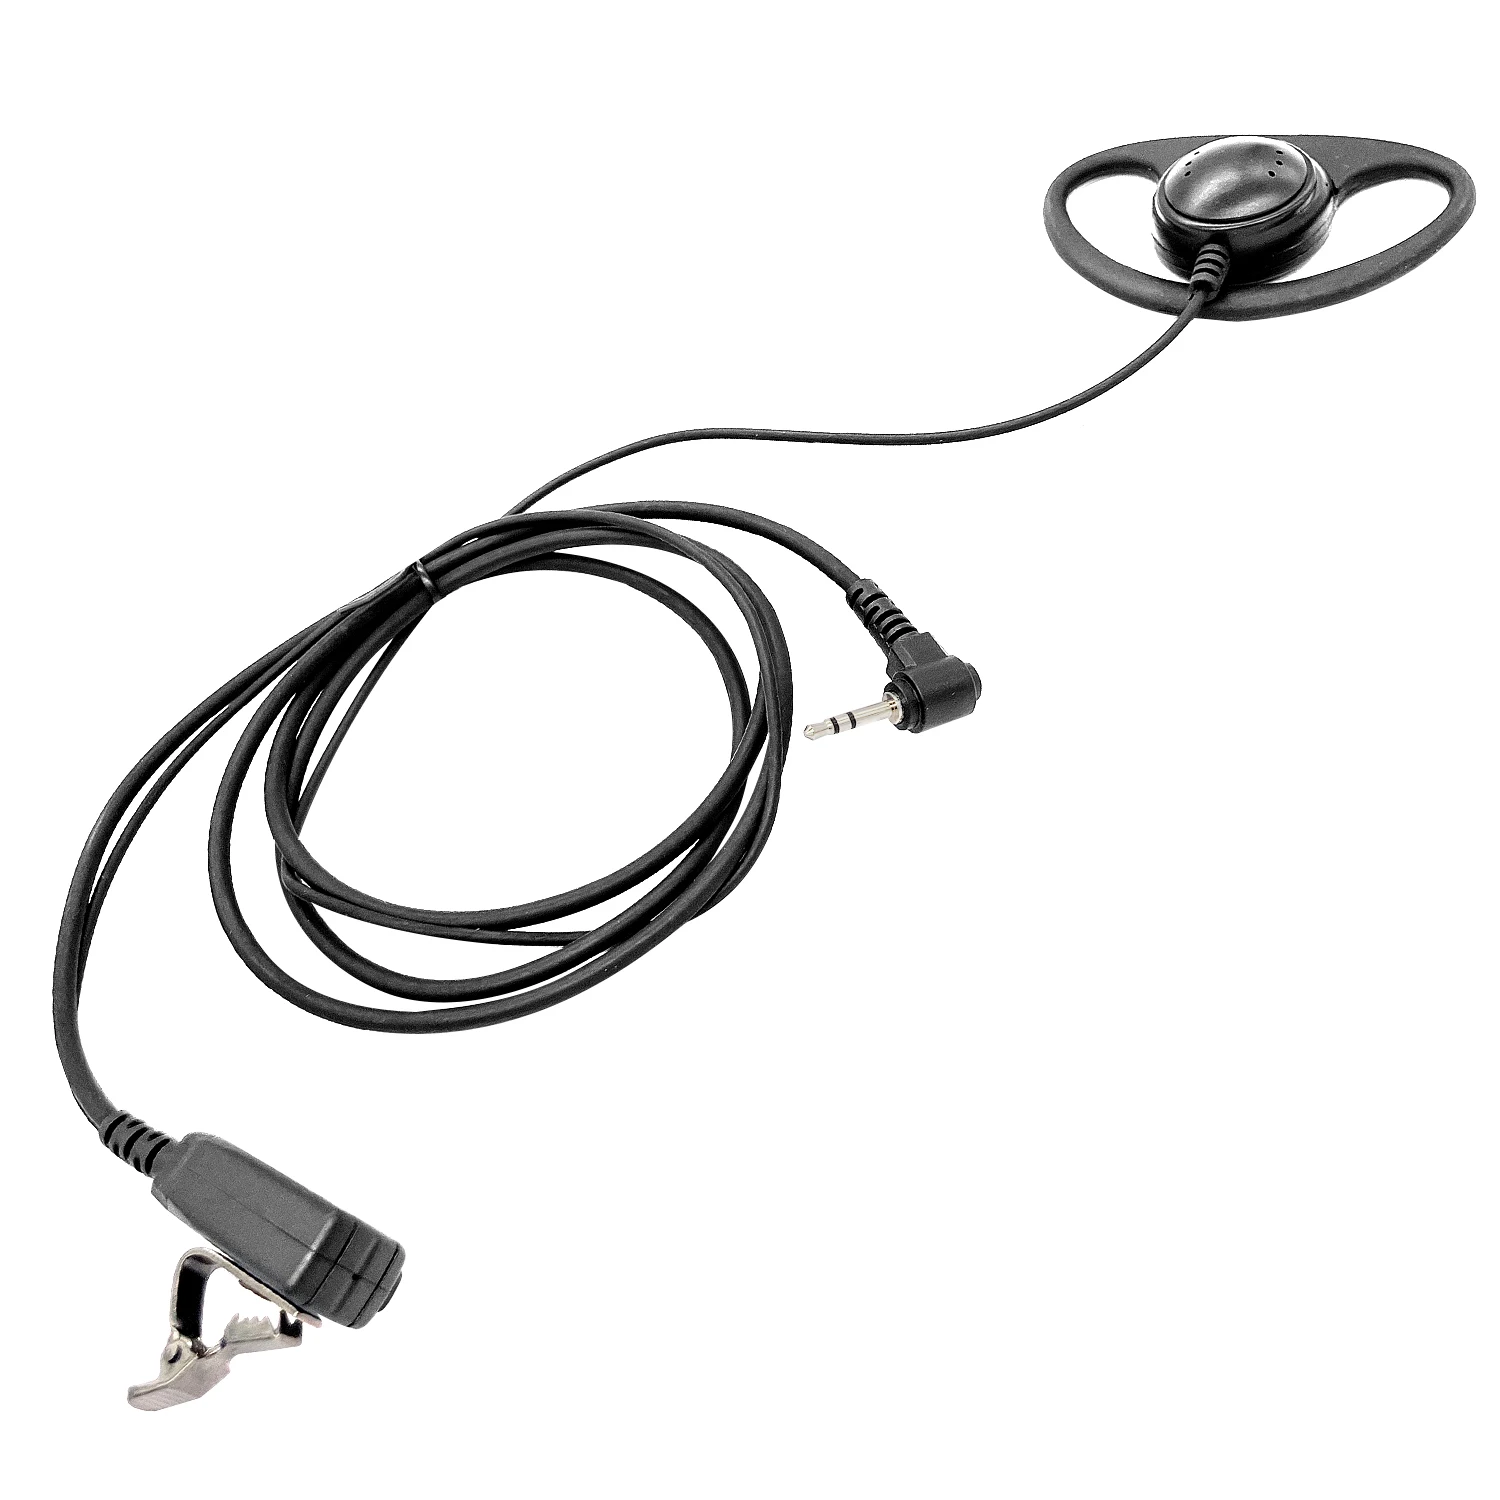 Type D ears hang walkie talkie headset Earpiece for MOTOROLA 280,T289,T5100,T5200,T5300,T5320,5400,T5410 two way radios enlarge